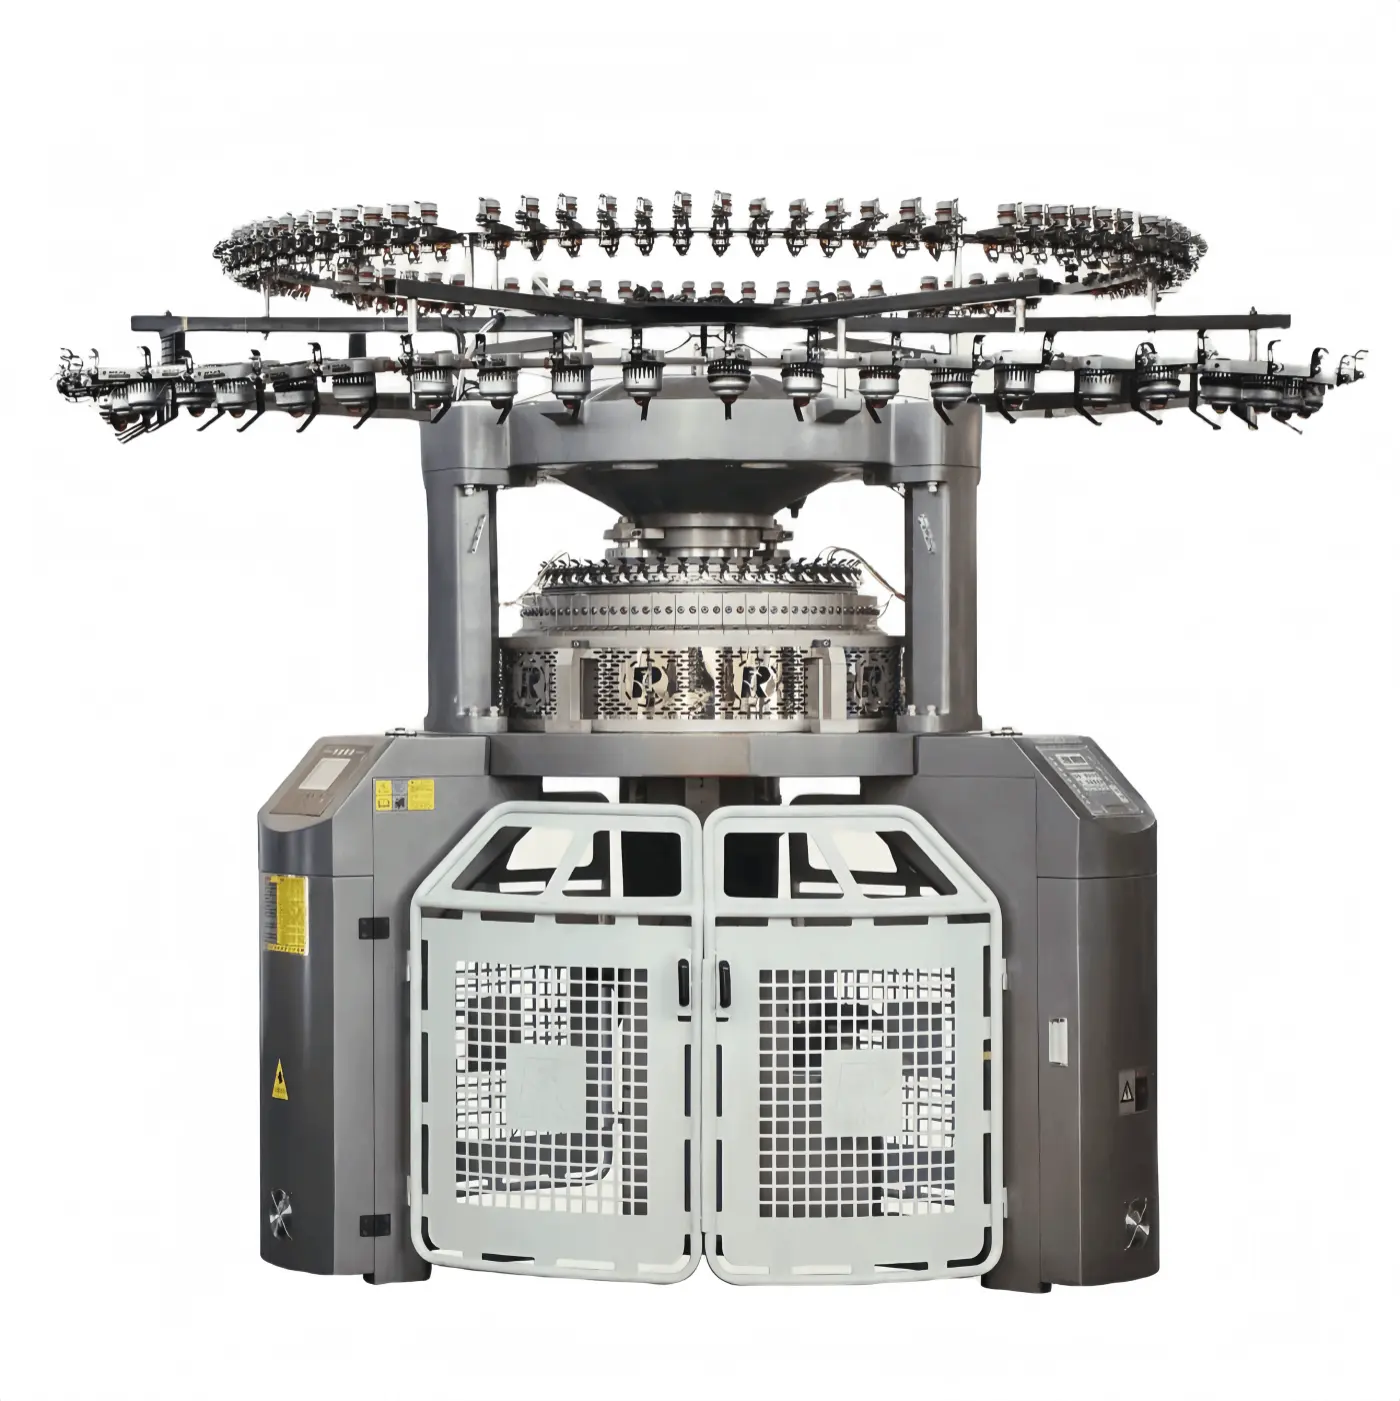 ماكينة حياكة جاكار مُحوسبة مزدوجة الأوجه بسعر منخفض من مصنع HuanS، ماكينة حياكة أقمشة للملابس